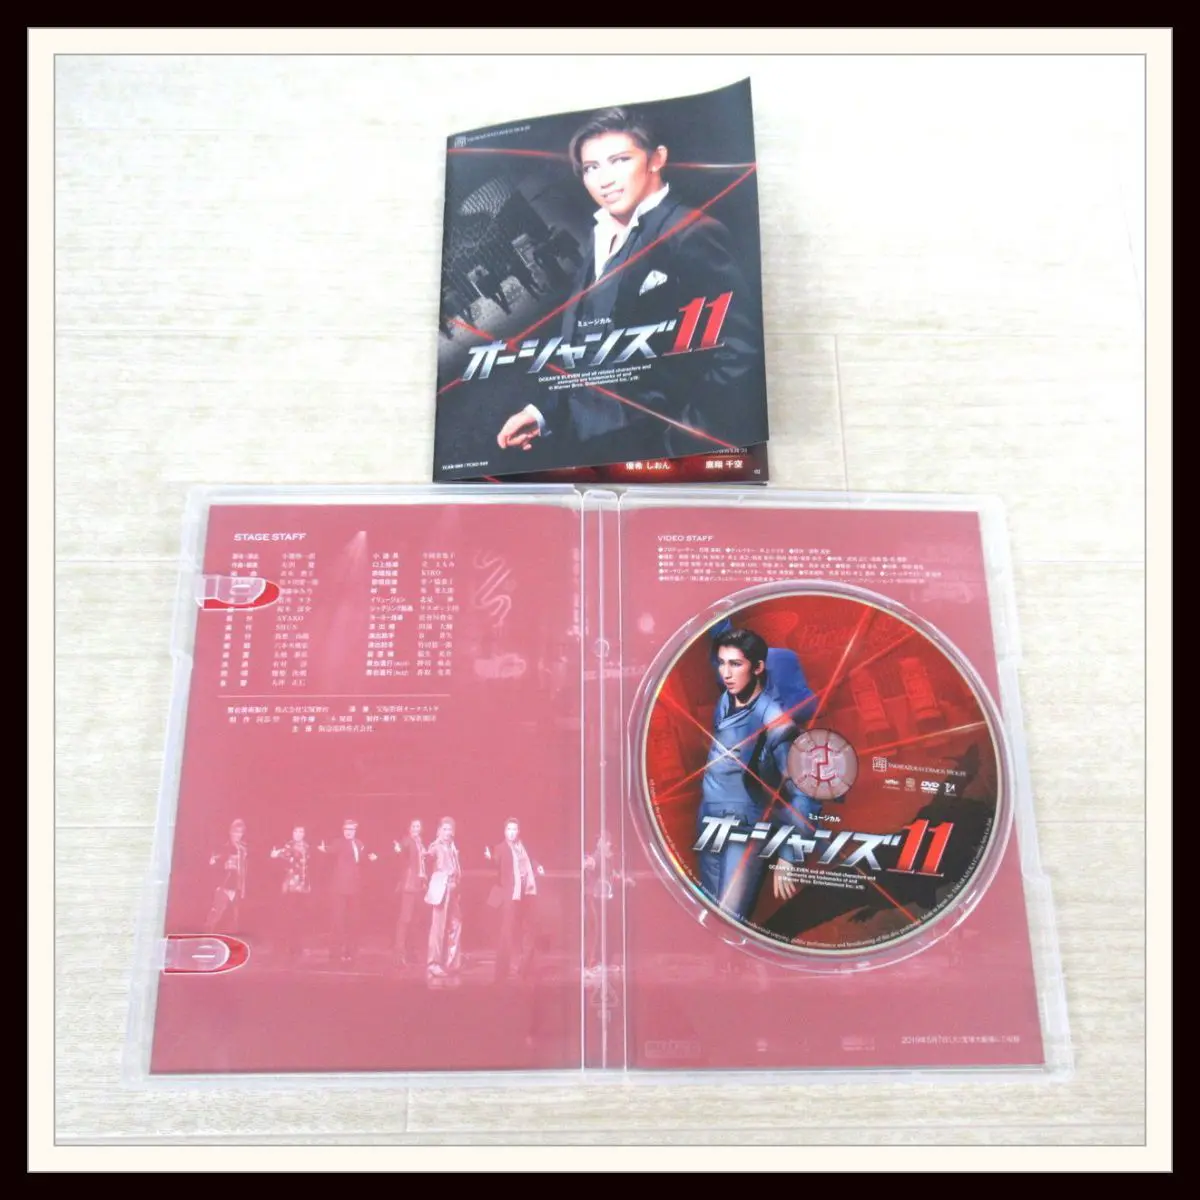 宝塚歌劇星組 オーシャンズ11 DVD